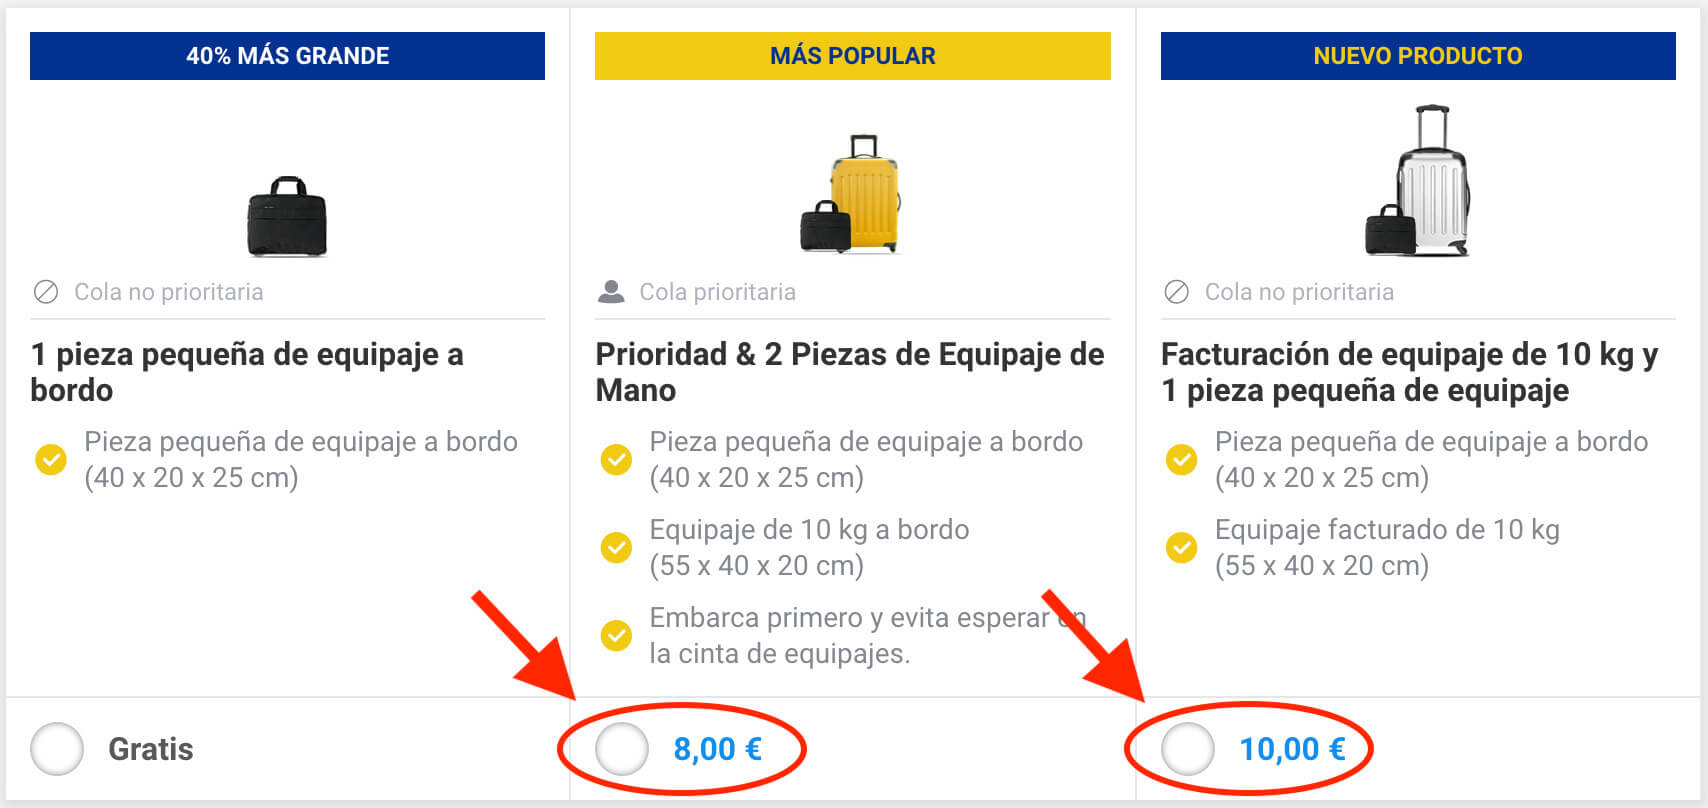 Ryanair Aumenta los Precios del 